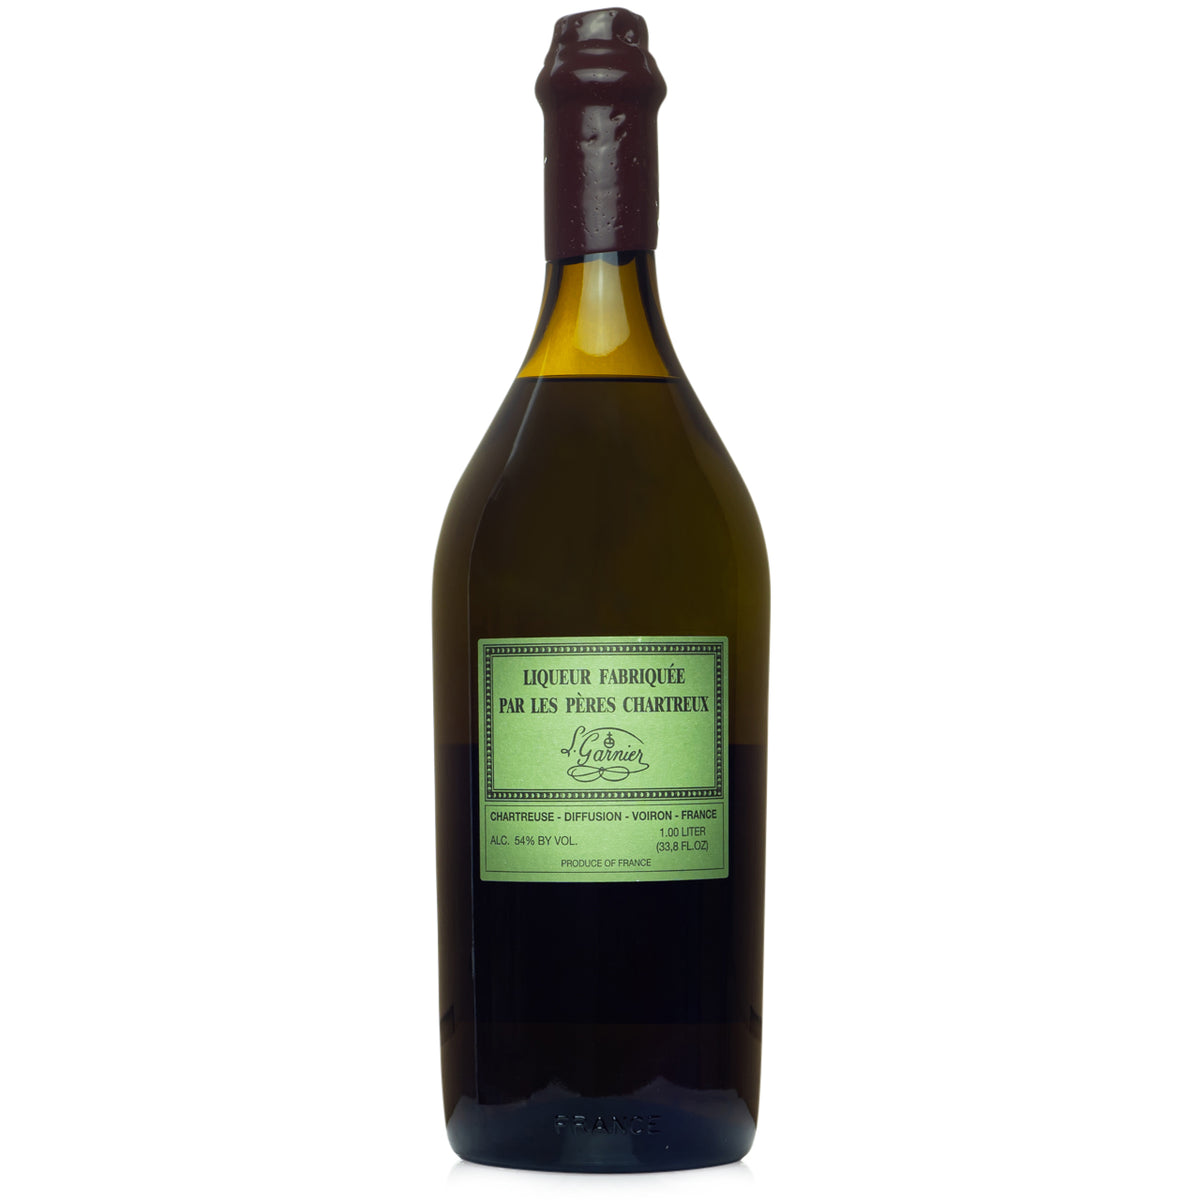 4 bottles nv Chartreuse Verte mise 2022, L. Garnier - hi…